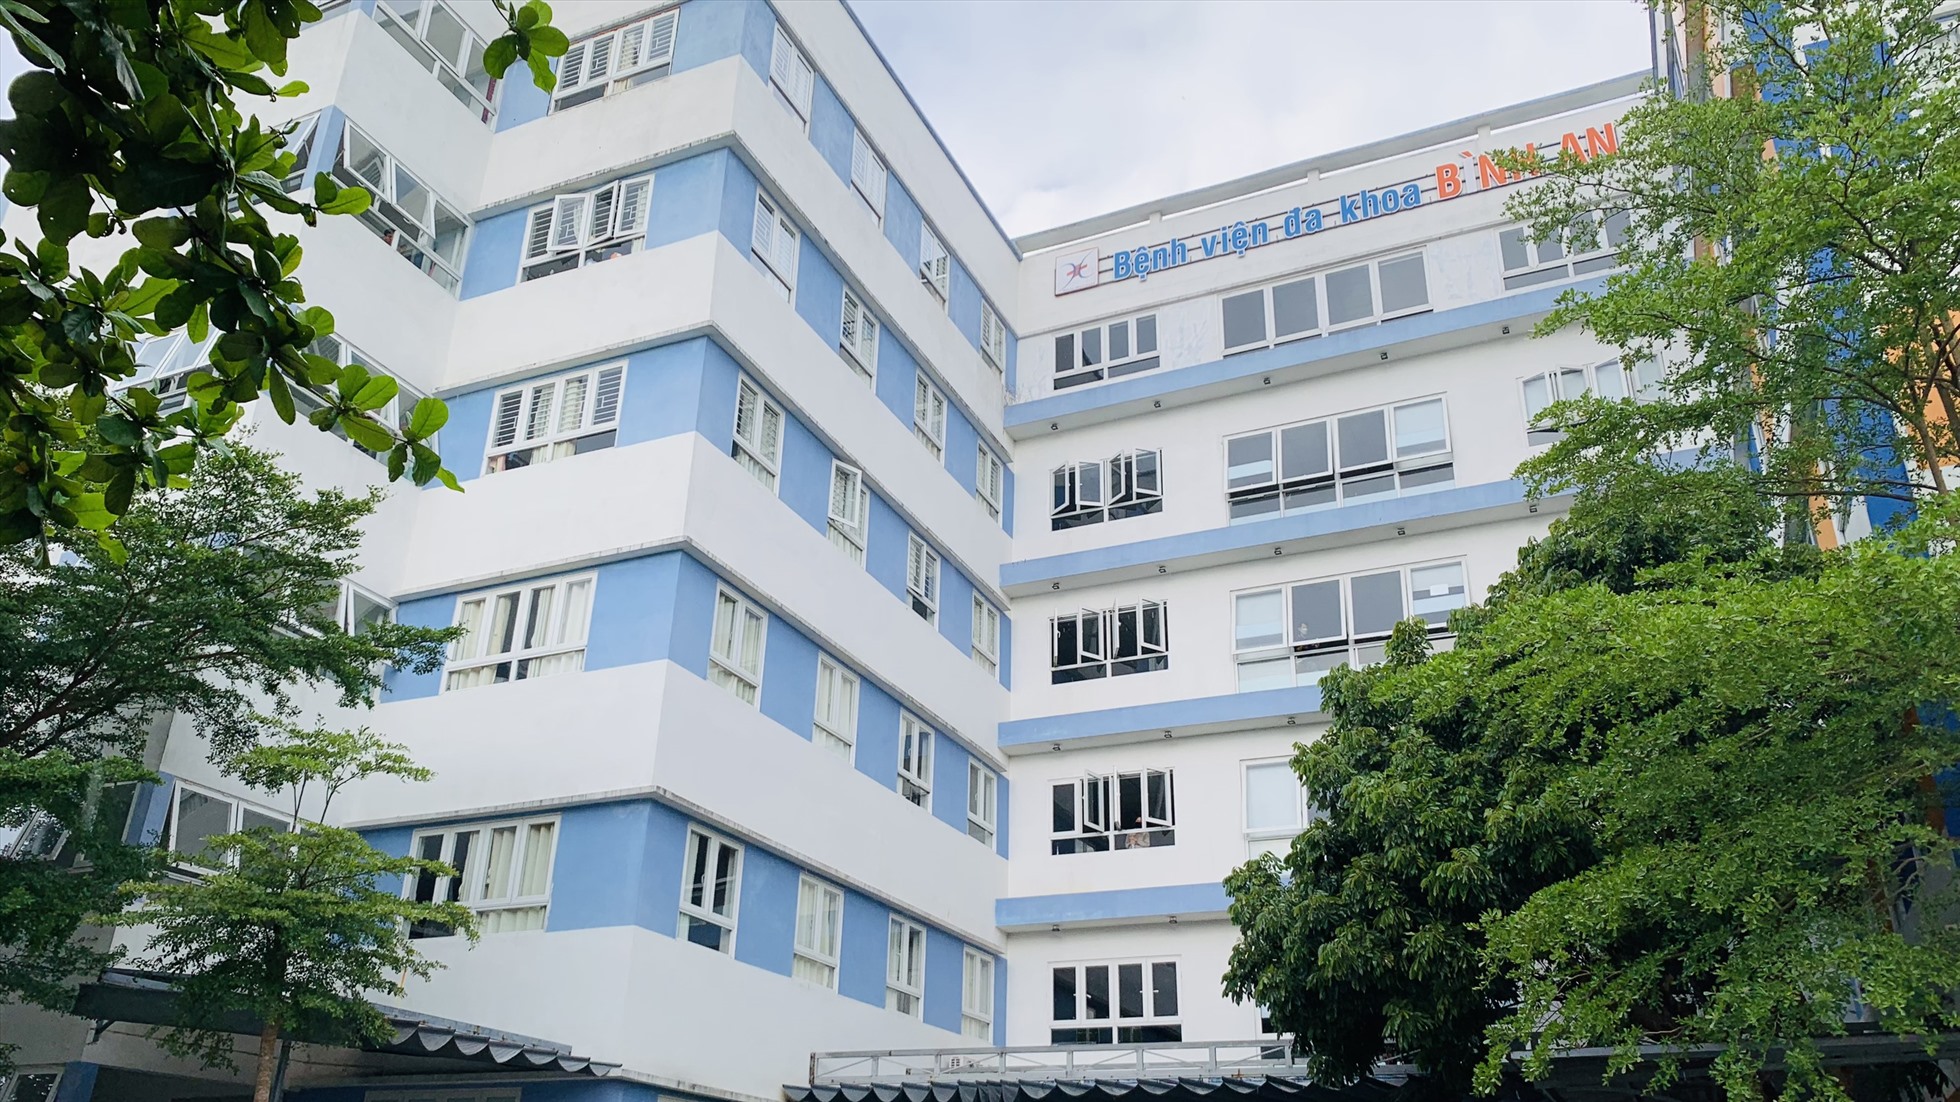 Bệnh viện Bình An hiện đang rao bán, số phần NLĐ sẽ phụ thuộc vào quyết định của Nhà đầu tư mới. Ảnh Hoàng Bin